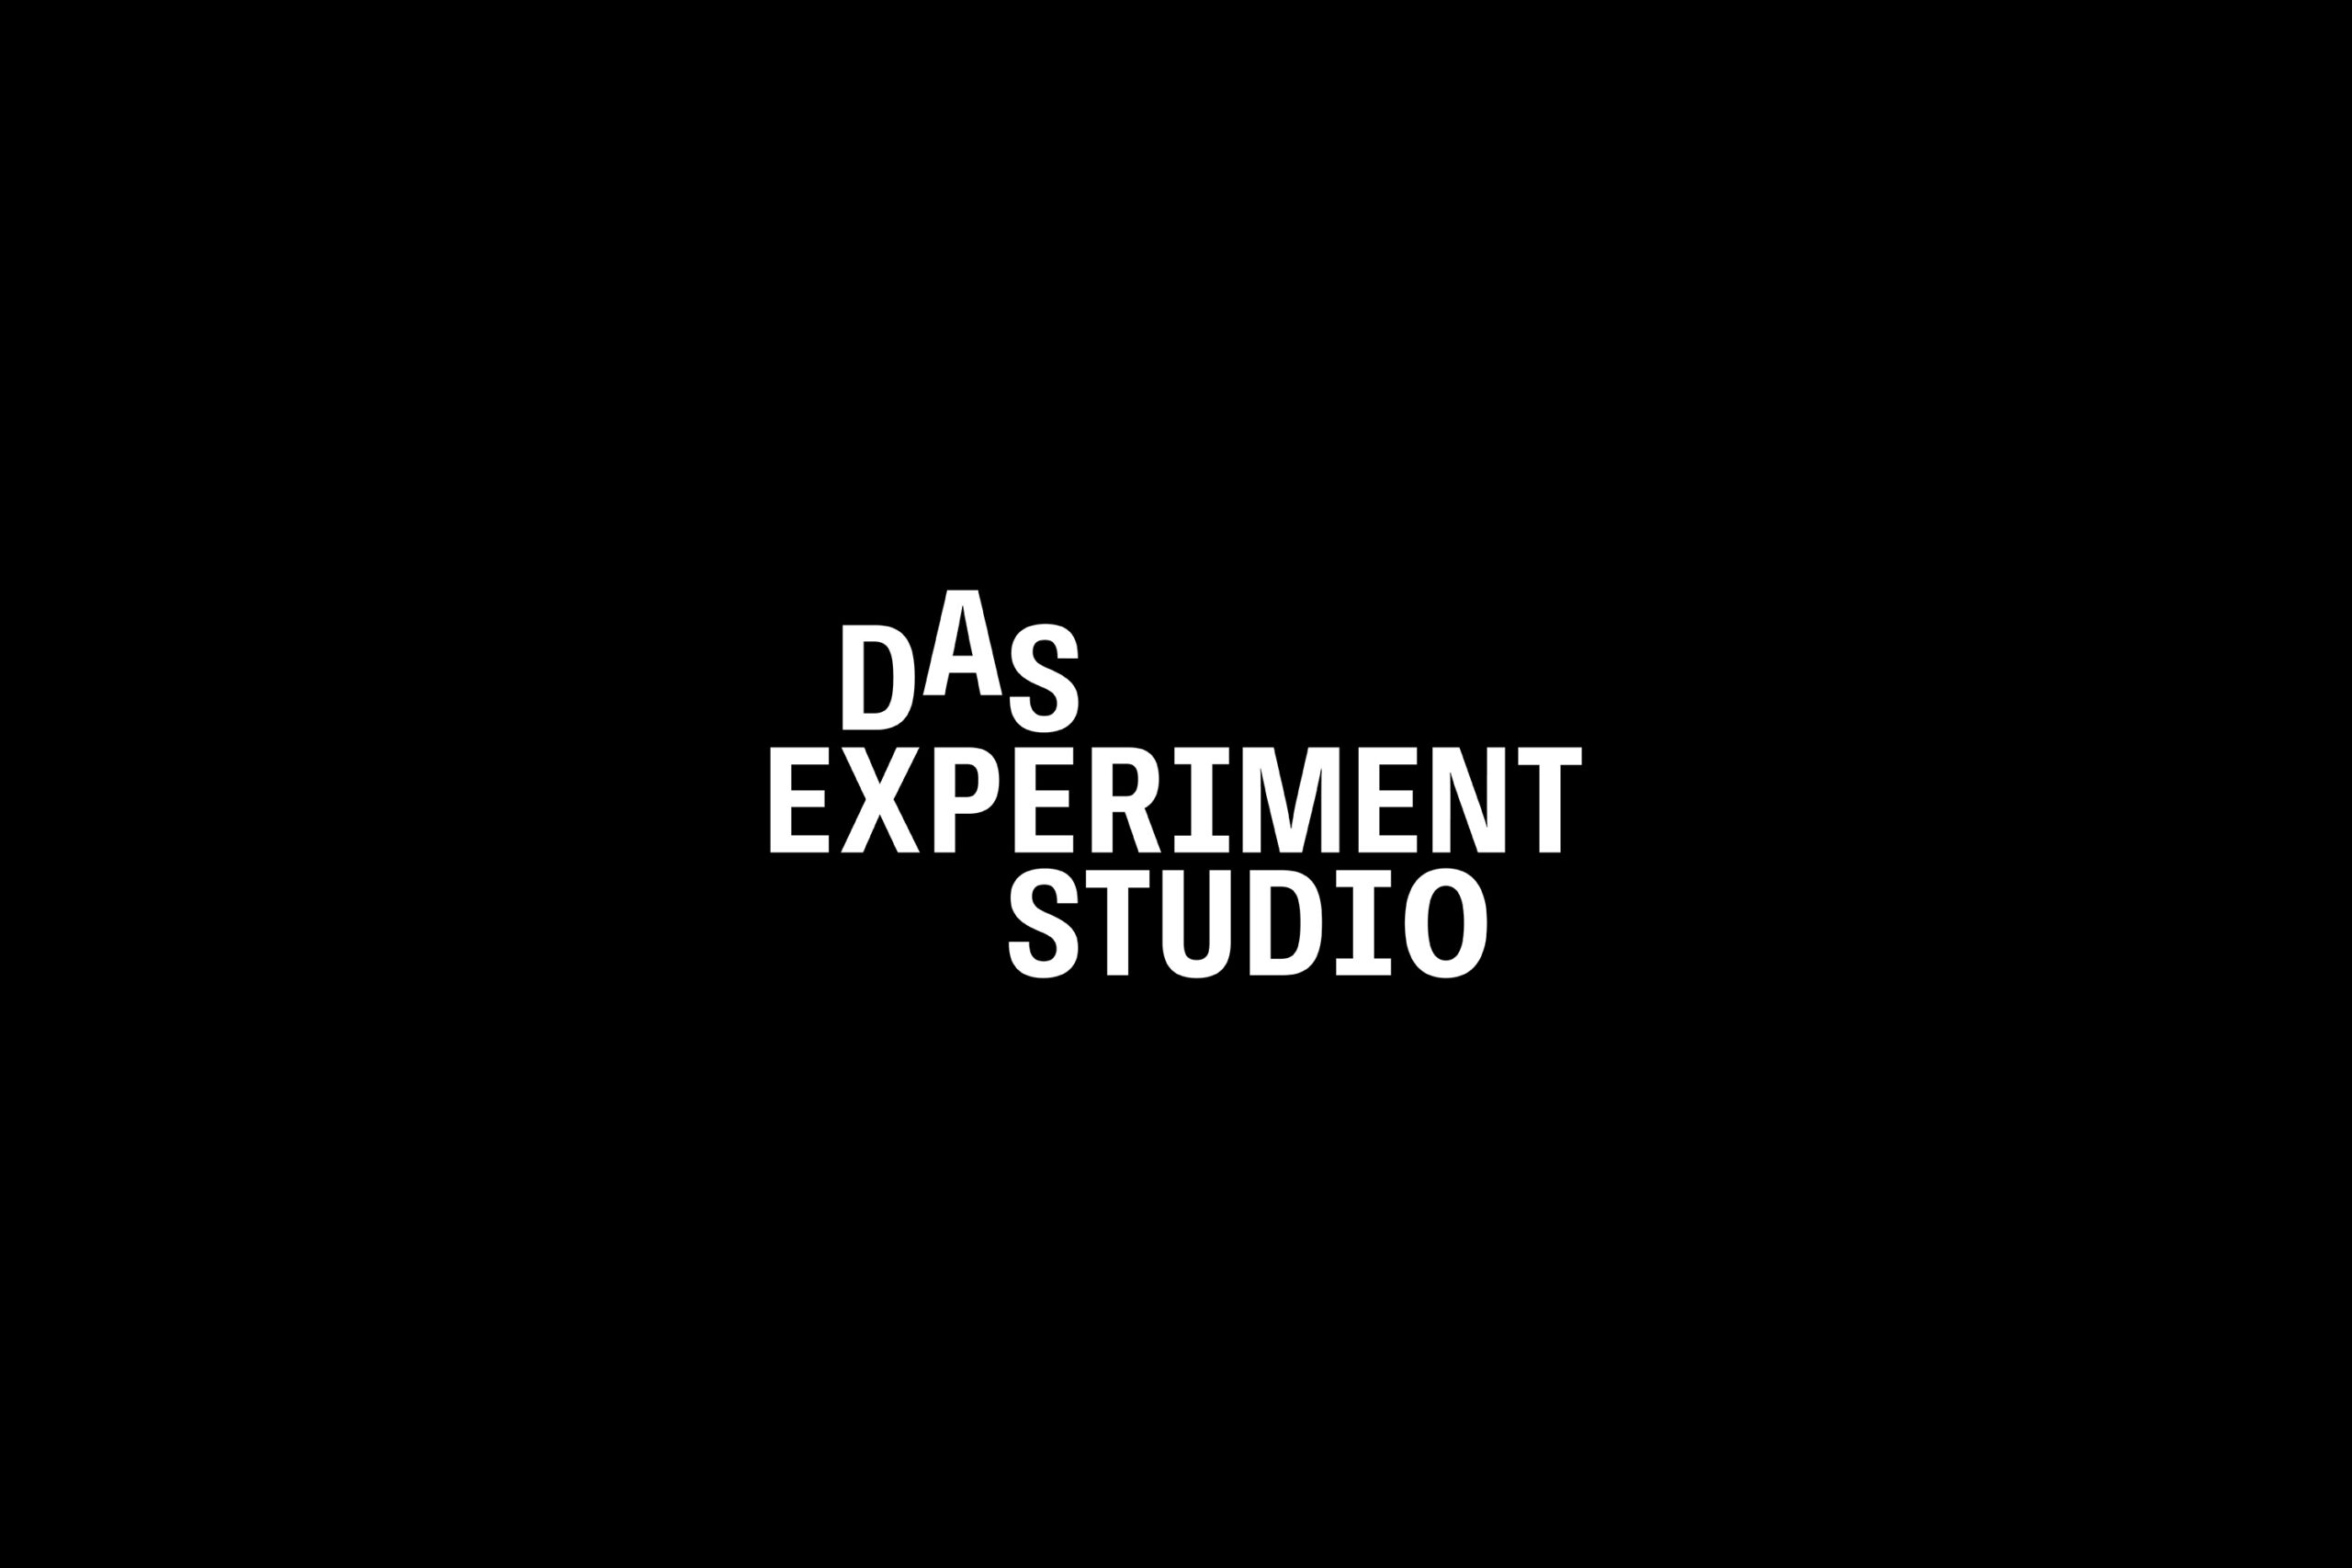 DAS Experiment Studio